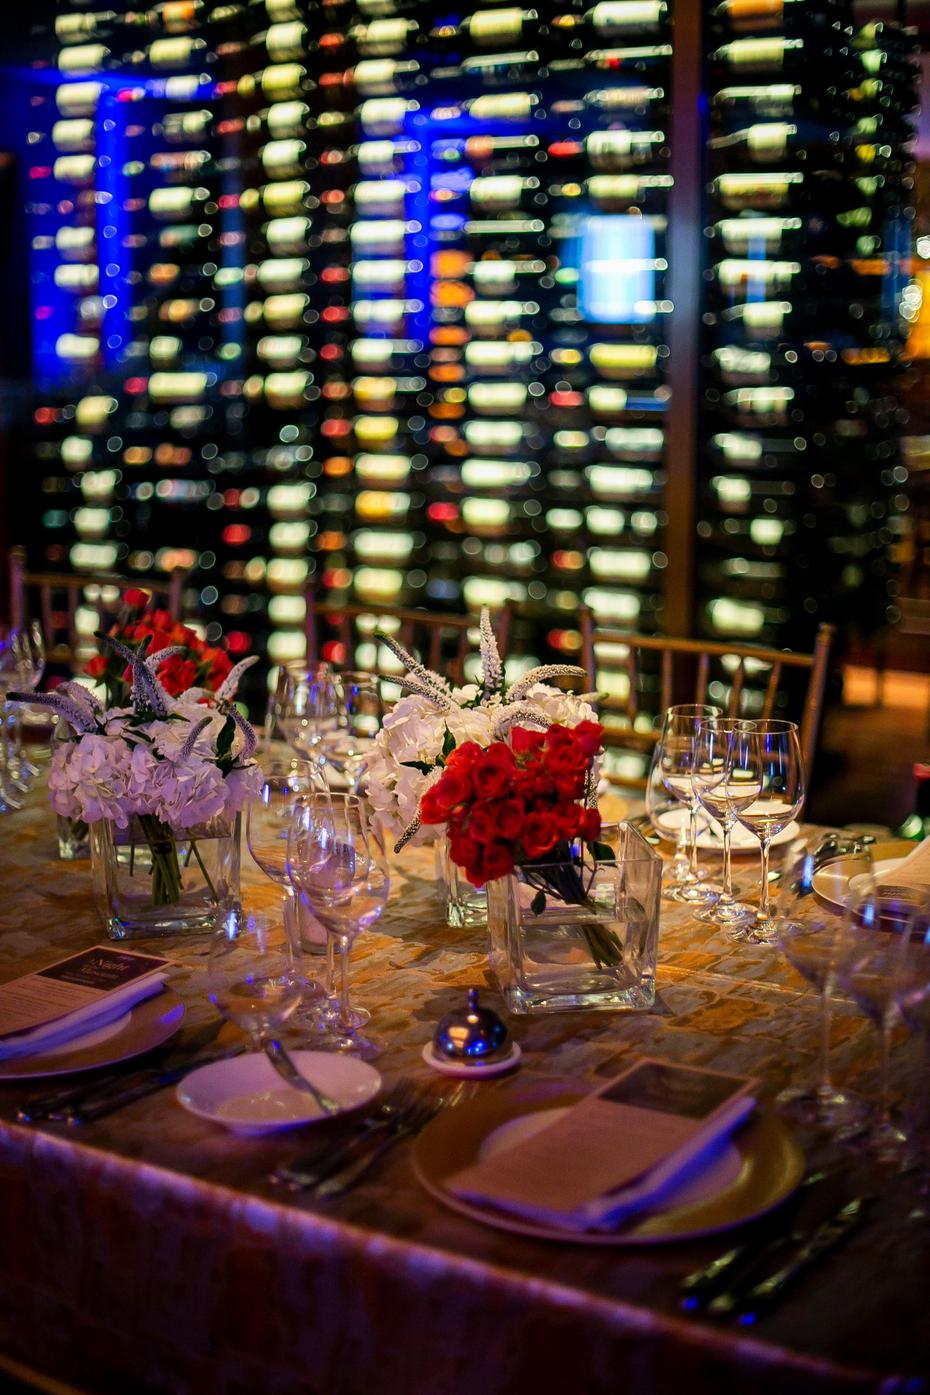 La selección de vinos que acompañó cada plato estuvo a cargo de la empresa Serrallés.